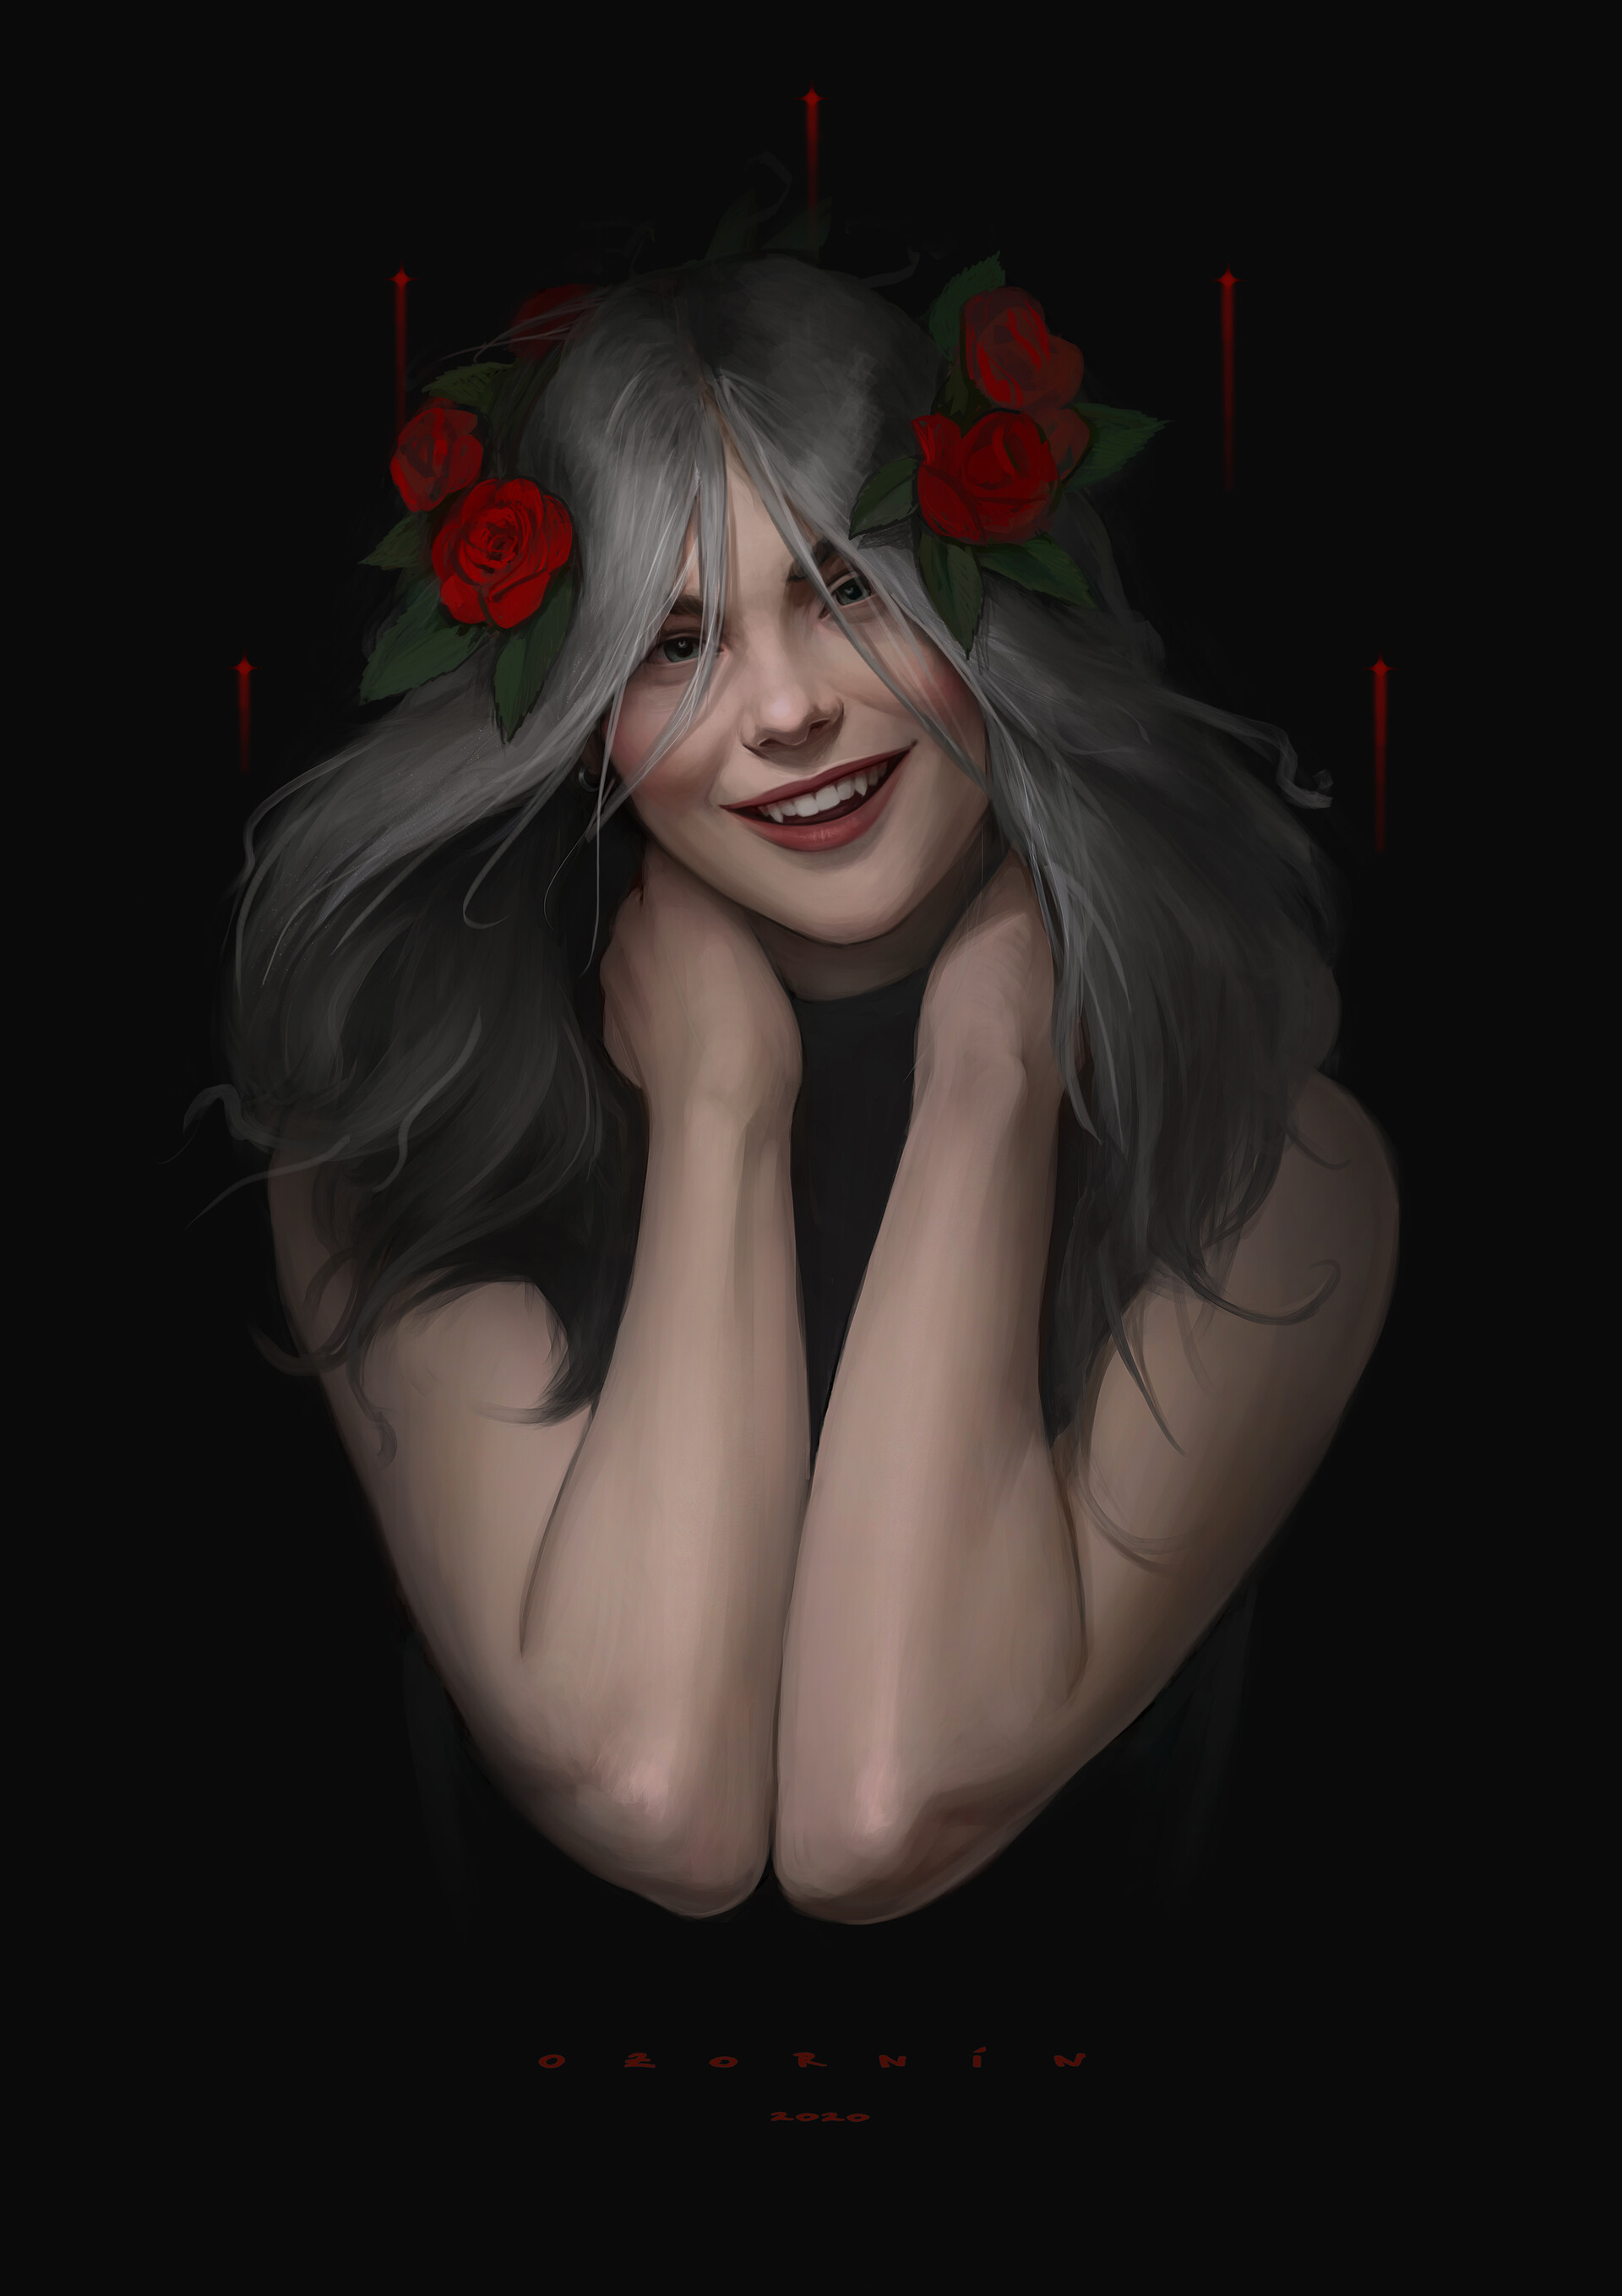 Ilya Ozornin Roses Flower Crown Crown Flower In Hair CROWNED Rose Smiling Fangs Vampires Portrait Di 1920x2717